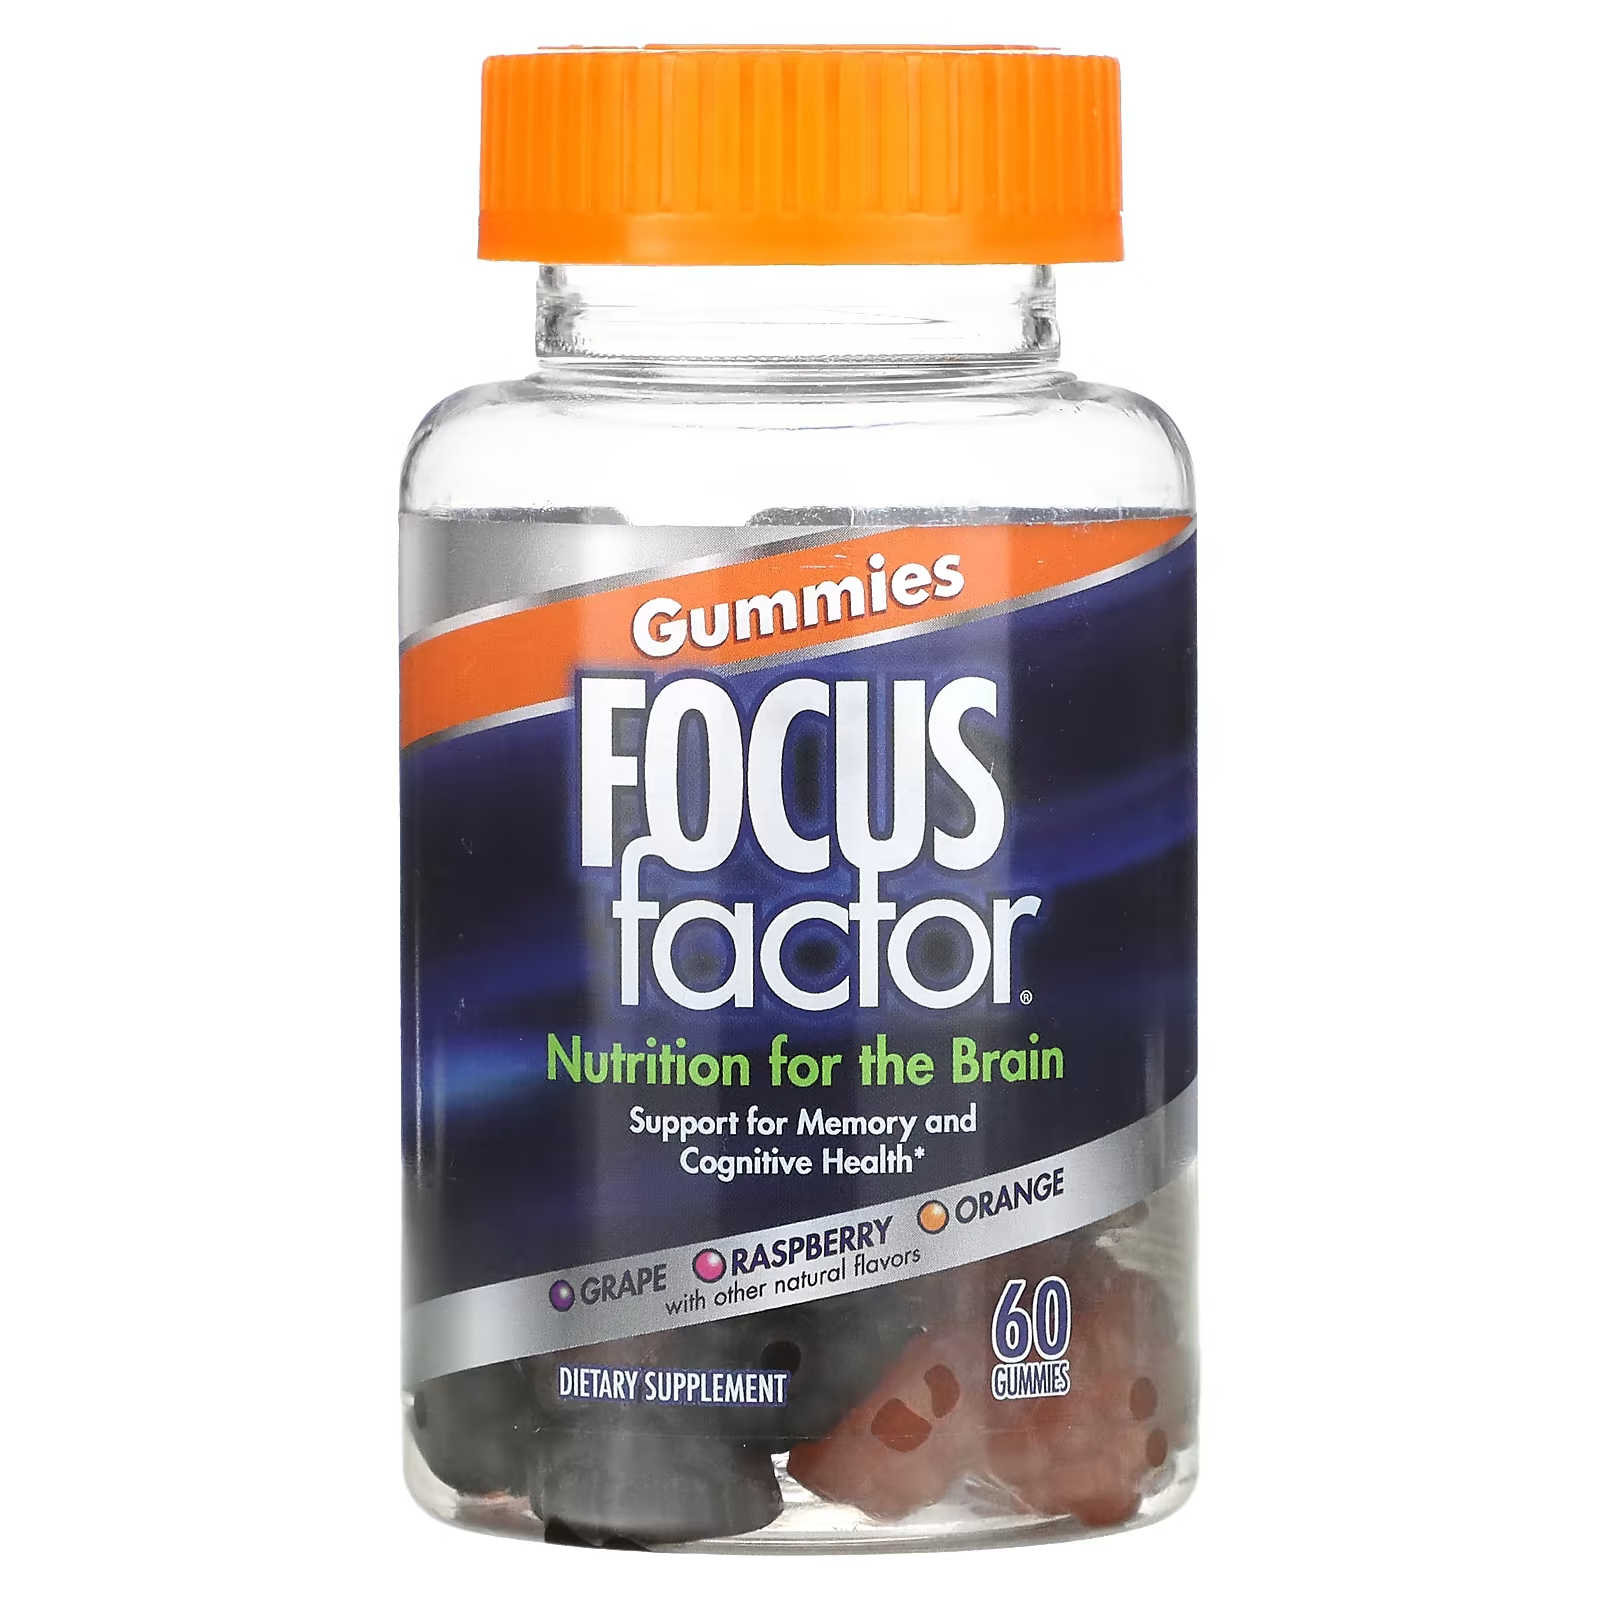 Пищевая добавка Focus Factor Nutrition For The Brain виноград, малина, апельсин, 60 жевательных таблеток zahler adultfocus поддержка когнитивного здоровья 60 капсул